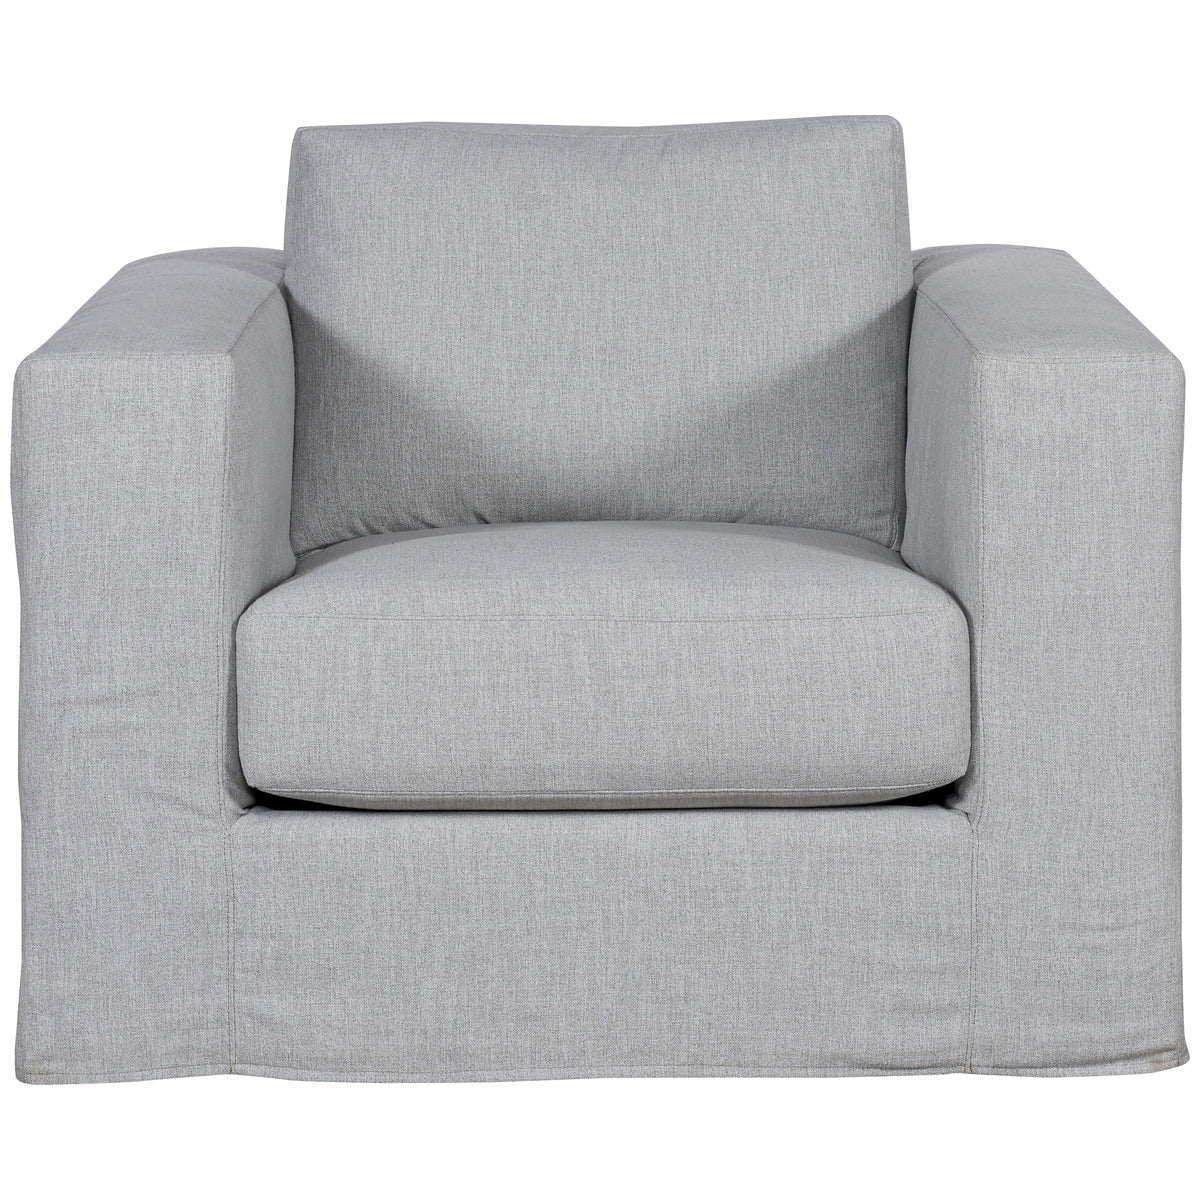 Vanguard Furniture Leone Slipcovered Muslin Swivel Chair